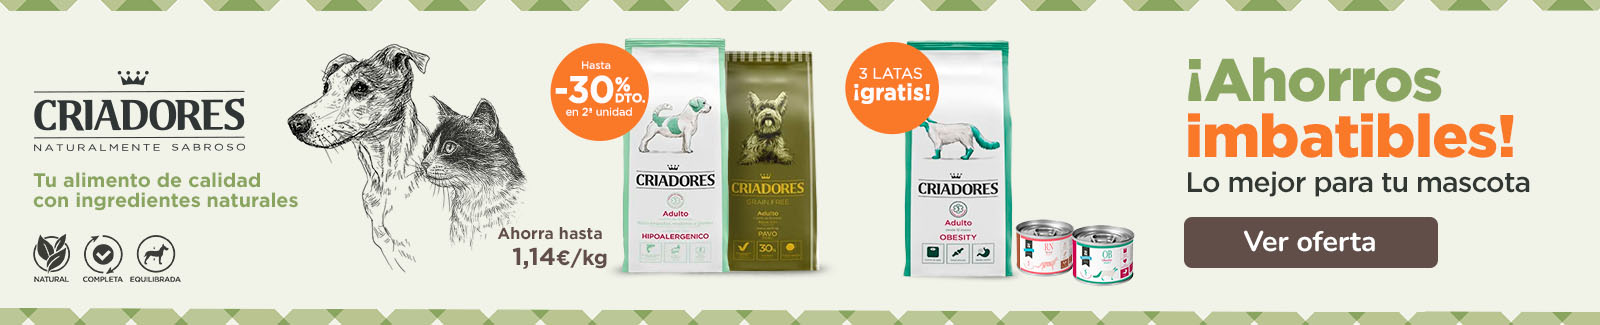 Criadores grain free + dietas hasta - 30% 2ªud y dietas gato 2,5kg + 3 latas ¡gratis!